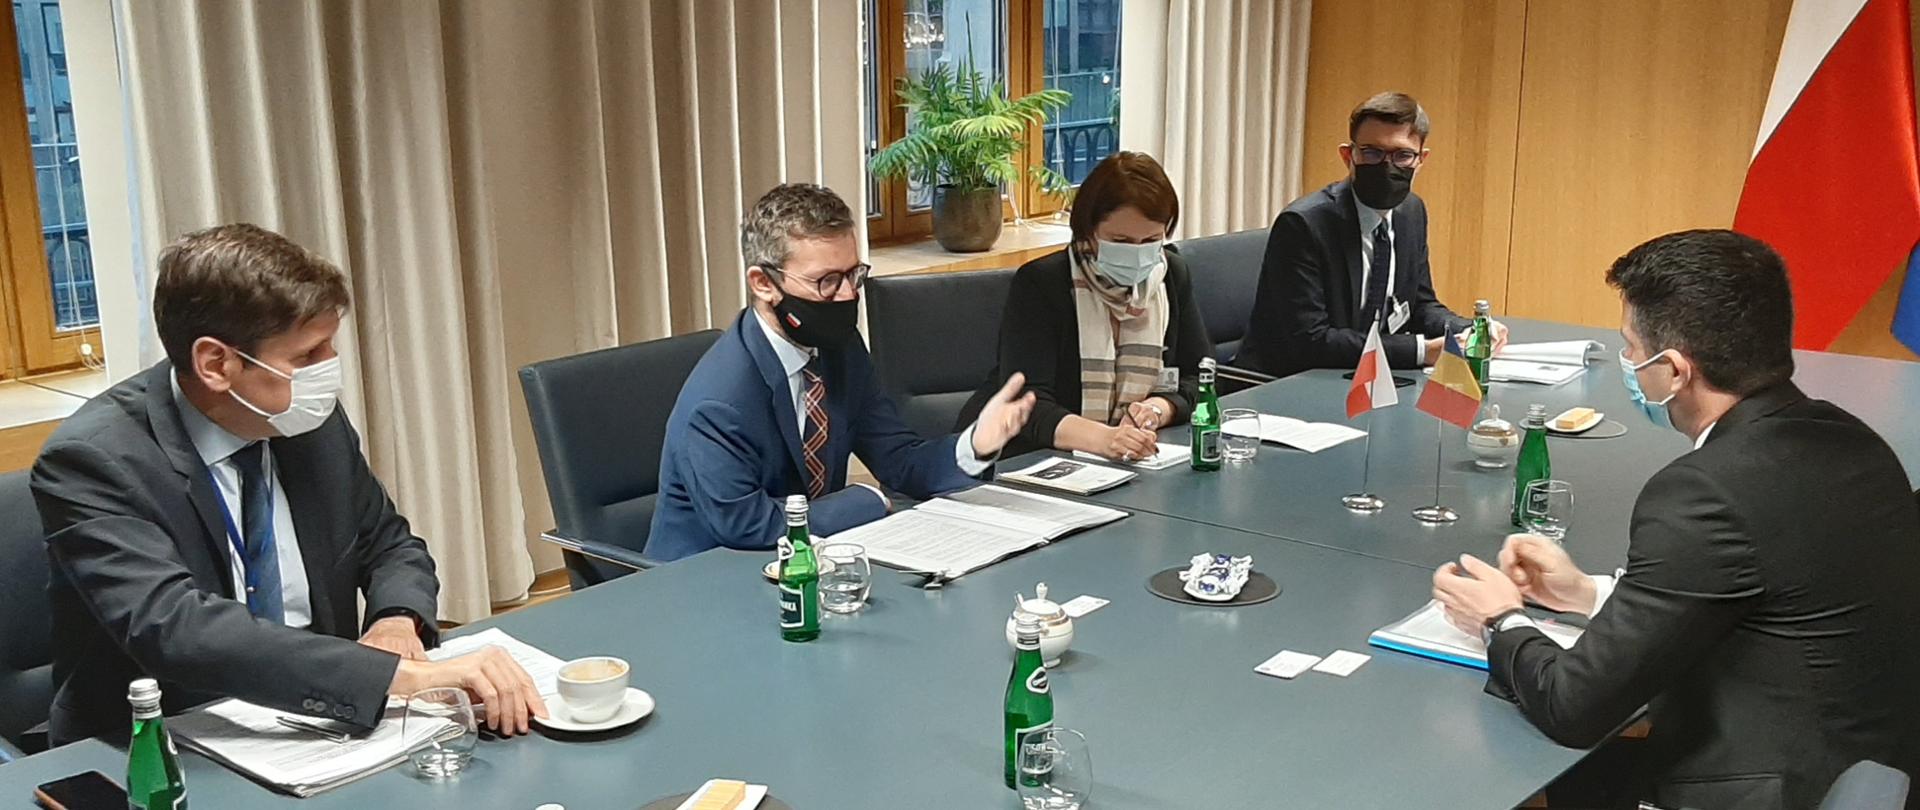 Wiceminister infrastruktury Grzegorz Witkowski podczas spotkania z rumuńskim odpowiednikiem